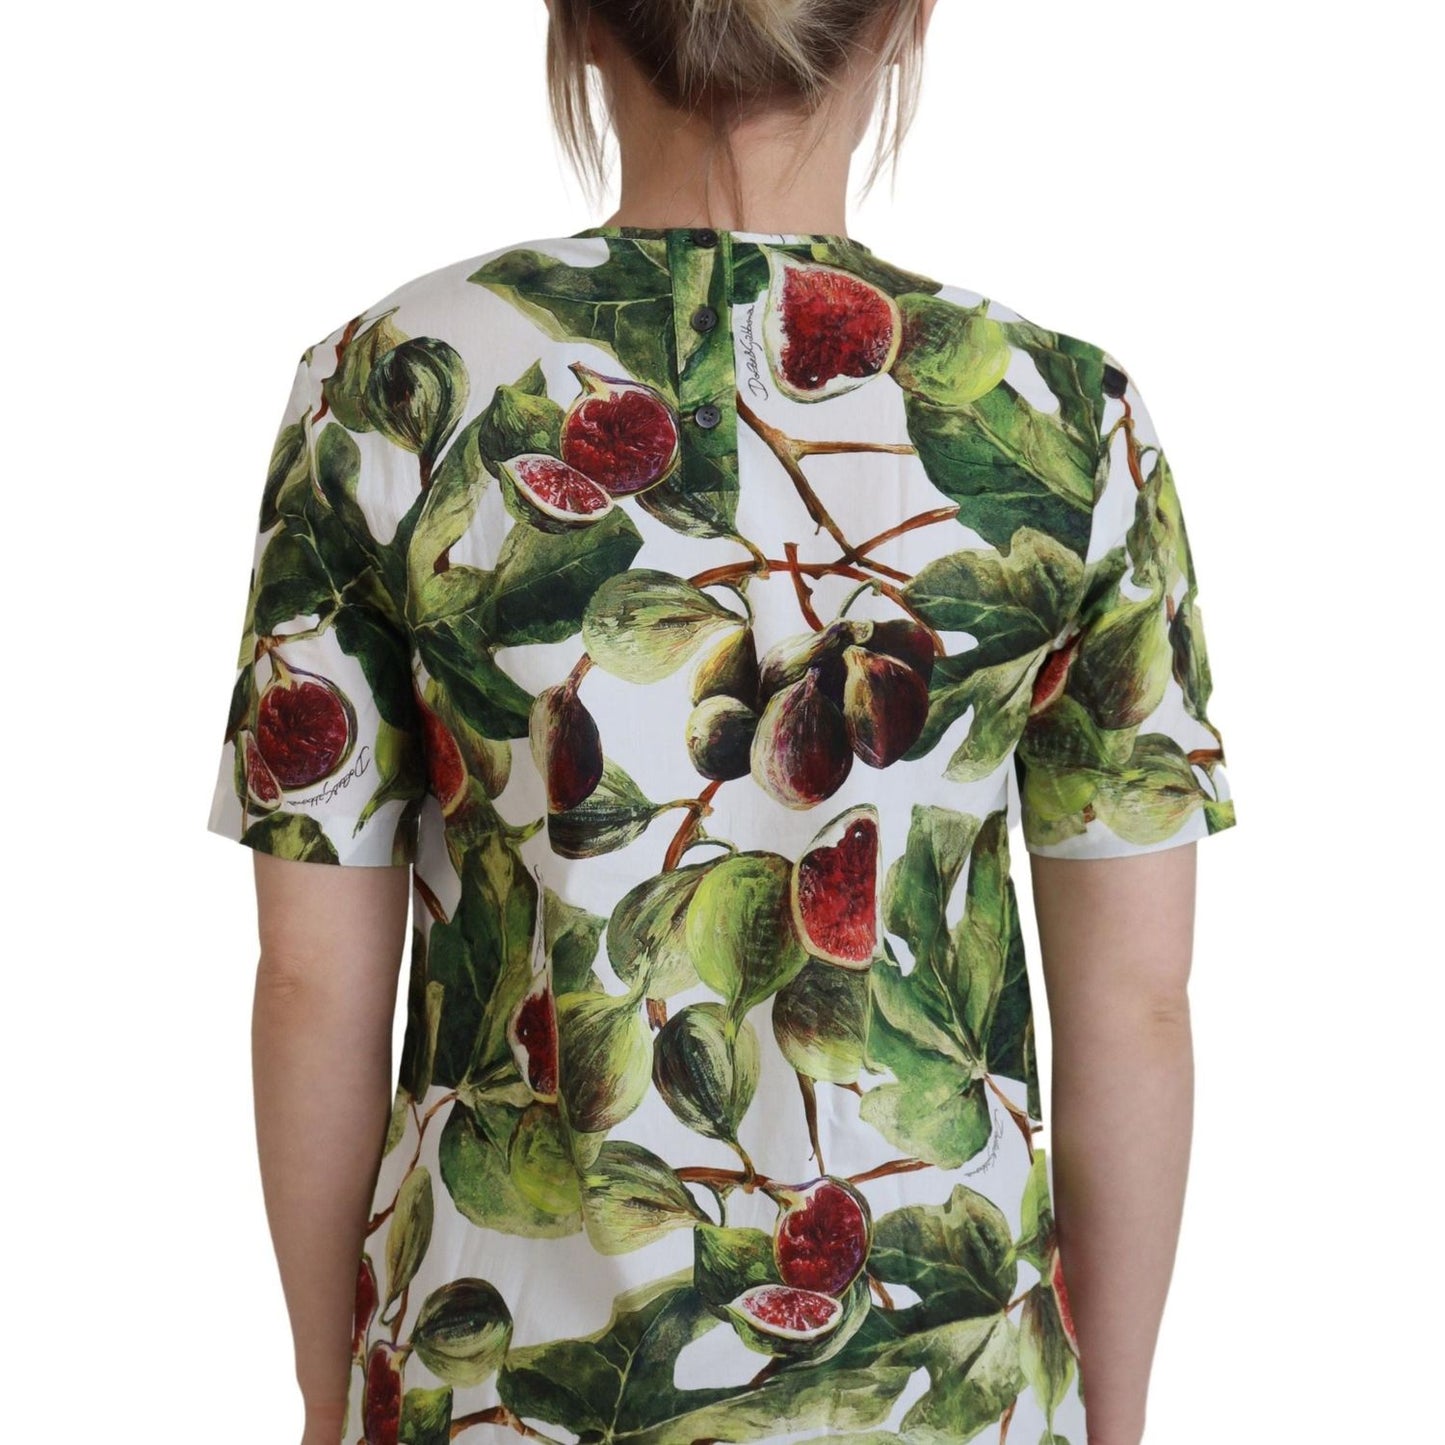 Dolce & Gabbana Chic Multicolor Fig Print Cotton Top crew-neck-cotton-top-blouse-fruit-t-shirt